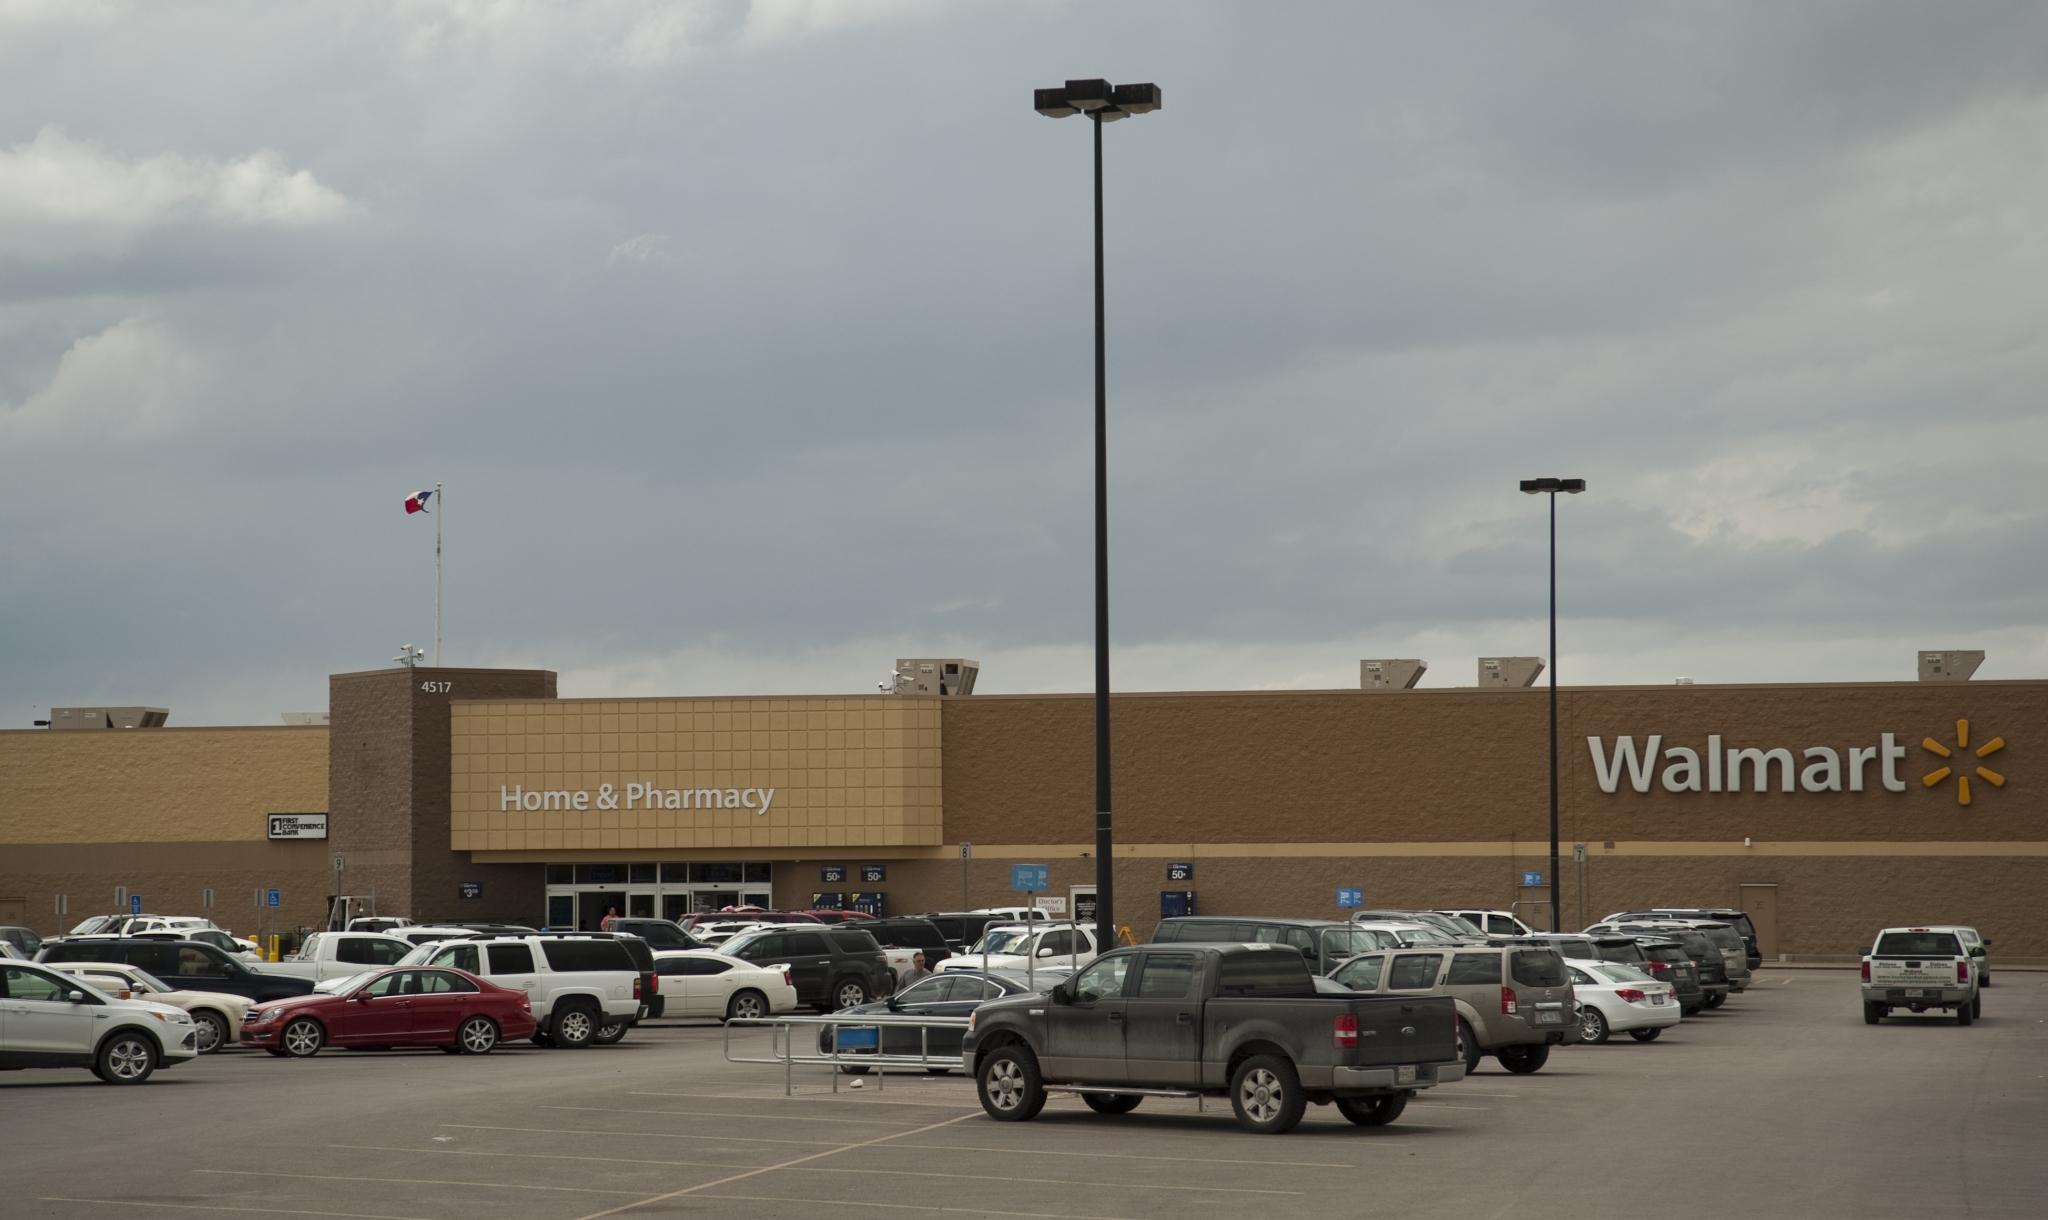 Texans-blame-secret-military-takeover-for-Walmart-closings-secret-tunnels.jpg